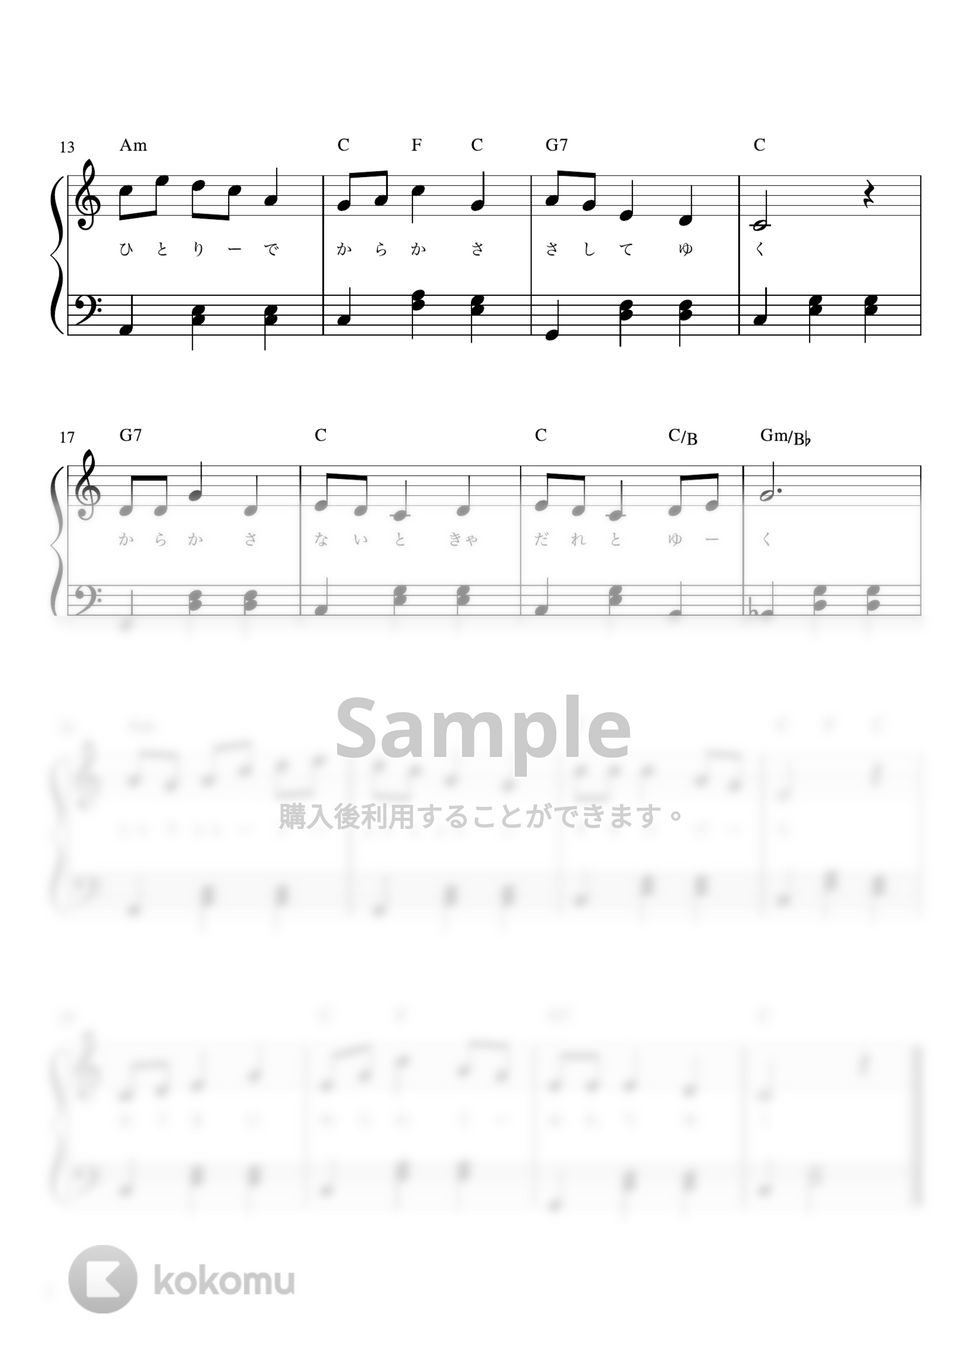 雨ふりお月さん (Cdur・ピアノソロ初級) by pfkaori